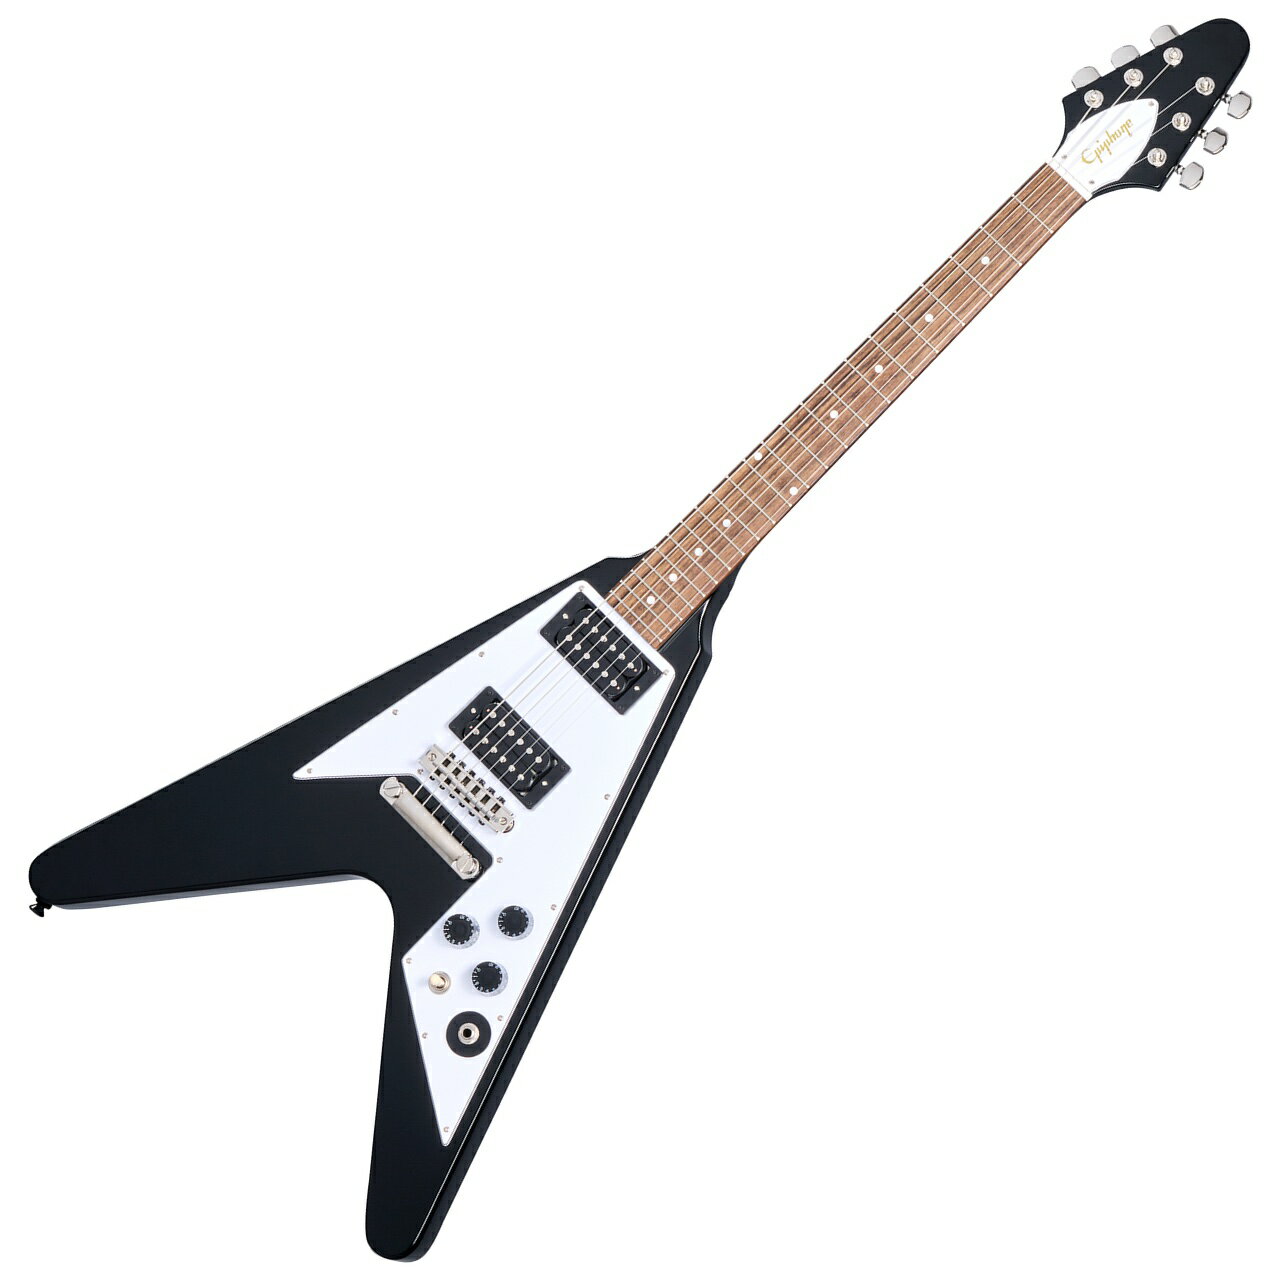 カーク・ハメットの1979 年製Flying V は、世界中のメタリカ・ファンにとってお馴染みのギターです。そのギターはカークにとって初のギブソンであり、ギブソン・ギターへの情熱を確立した記念すべき1本です。購入のきっかけは、カークが当時憧れていた有名なFlying Vプレイヤーに触発されたことと、よりふくよかなサウンドを求めていたことに由来します。カークはそのオリジナルギターを今でも弾き続けており、『Kill &#39;Em All』、『Ride the Lightning』、『Master of Puppets』、『...And Justice for All』、『The Black Album』など、初期のメタリカのすべてのアルバムでそのギターを使用しました。カークのFlying V はヘヴィメタル界で最も重要なギターのひとつとして高い評価を得ています。 エピフォンは、ギブソン・カスタムショップとの連携のもと、カークのオリジナルギターを念入りに再現した Epiphone Kirk Hammett 1979 Flying V をリリースします。マホガニー・ボディ、ボリュート付きワンピース・マホガニー・ネック、「スペード」ボタン付きGrover Rotomatic マシンヘッド、そしてカスタム・ブリッジを搭載。エレクトロニクスも一流で、ギブソンUSA キャリブレーテッドT タイプ・ハムバッカー ピックアップ、&trade;CTS ポテンショメーター、Orange Dropコンデンサー、Switchcraft 3ウェイ・ピックアップ・セレクター・トグル・スイッチ、1/4 &quot;アウトプット・ジャックを装備。ヘッドストック裏にはカーク・ハメットのロゴがあしらわれています。赤い豪華な内装のブラック・ハードシェル・ケースが付属します。 画像はメーカー画像です。お届けの商品とは仕様や木目・色合いが異る場合があります。 他のサイトでも販売しています。買い物かごに入れても売り切れの場合がございますのであらかじめご了承下さいませ &nbsp; Body Material Mahogany Body Finish Gloss Neck Profile Rounded &quot;C&quot; with Volute Scale Length 628.65 mm / 24.75 in Fingerboard Material Indian Laurel Fingerboard Radius 304.8 mm / 12 in Fret Count 22 Frets Medium Jumbo Nut Material Graph Tech Nut Width 43.0 mm / 1.692 in Inlays Mother of Pearl Dot Joint Glued In, Set Neck Bridge Custom Bridge Tailpiece LockTone Stop Bar Tuning Machines Grover Rotomatic with Spade Button Pickguard White 70s Flying V, 3-ply Truss Rod Dual Action Truss Rod Cover White 70s Flying V, 3-ply, with Epiphone Logo in Gold Hotstamp Neck Pickup Gibson USA Calibrated T-Type Bridge Pickup Gibson USA Calibrated T-Type Controls 2 Volume, Master Tone, CTS Potentiometers, Orange Drop Capacitor Pickup Selector Switchcraft 3-way Toggle Output Jack Switchcraft 1/4&quot; Strings Gauge .010, .013, .017, .026, .036, .046